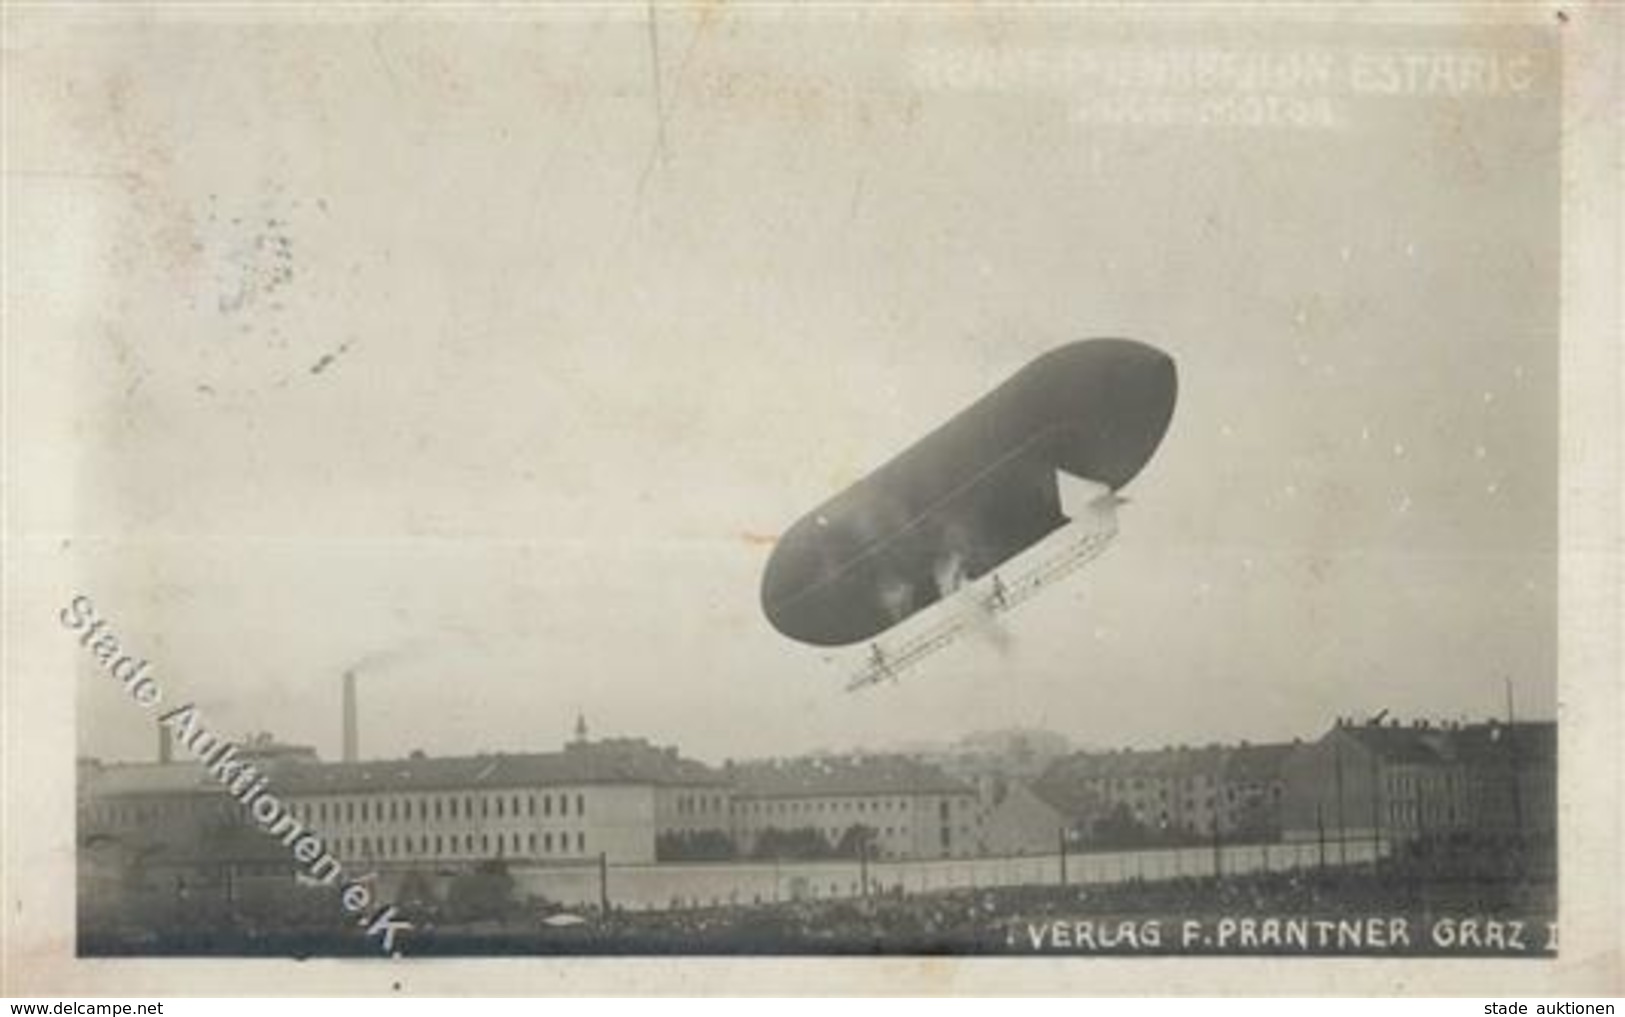 ZEPPELIN-LENKBALLON ESTARIC über GRAZ 1909 - Foto-Ak I-II - Dirigibili